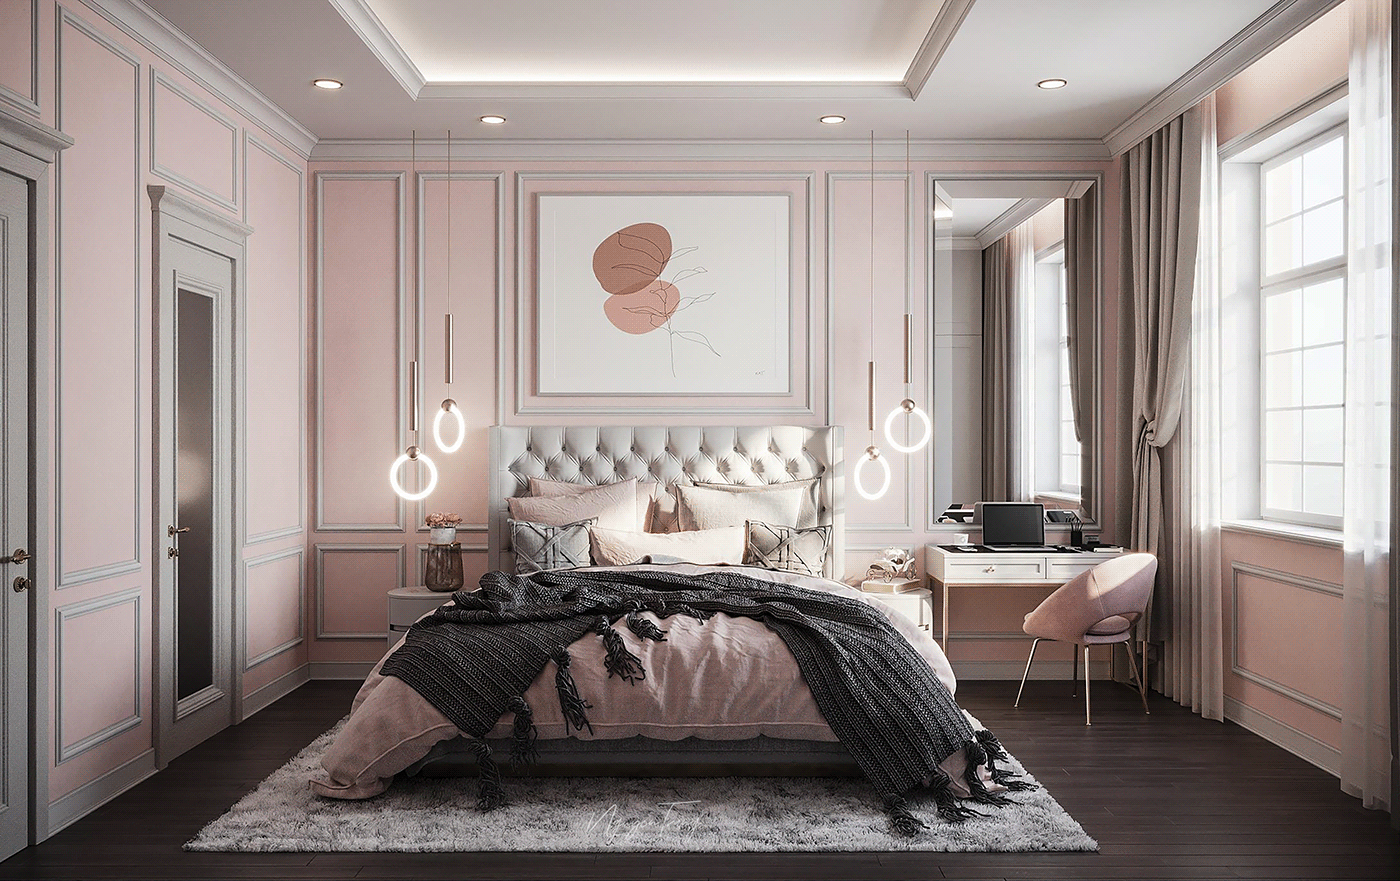 Mẫu phòng ngủ nền màu hồng nhạt kết hợp màu trắng